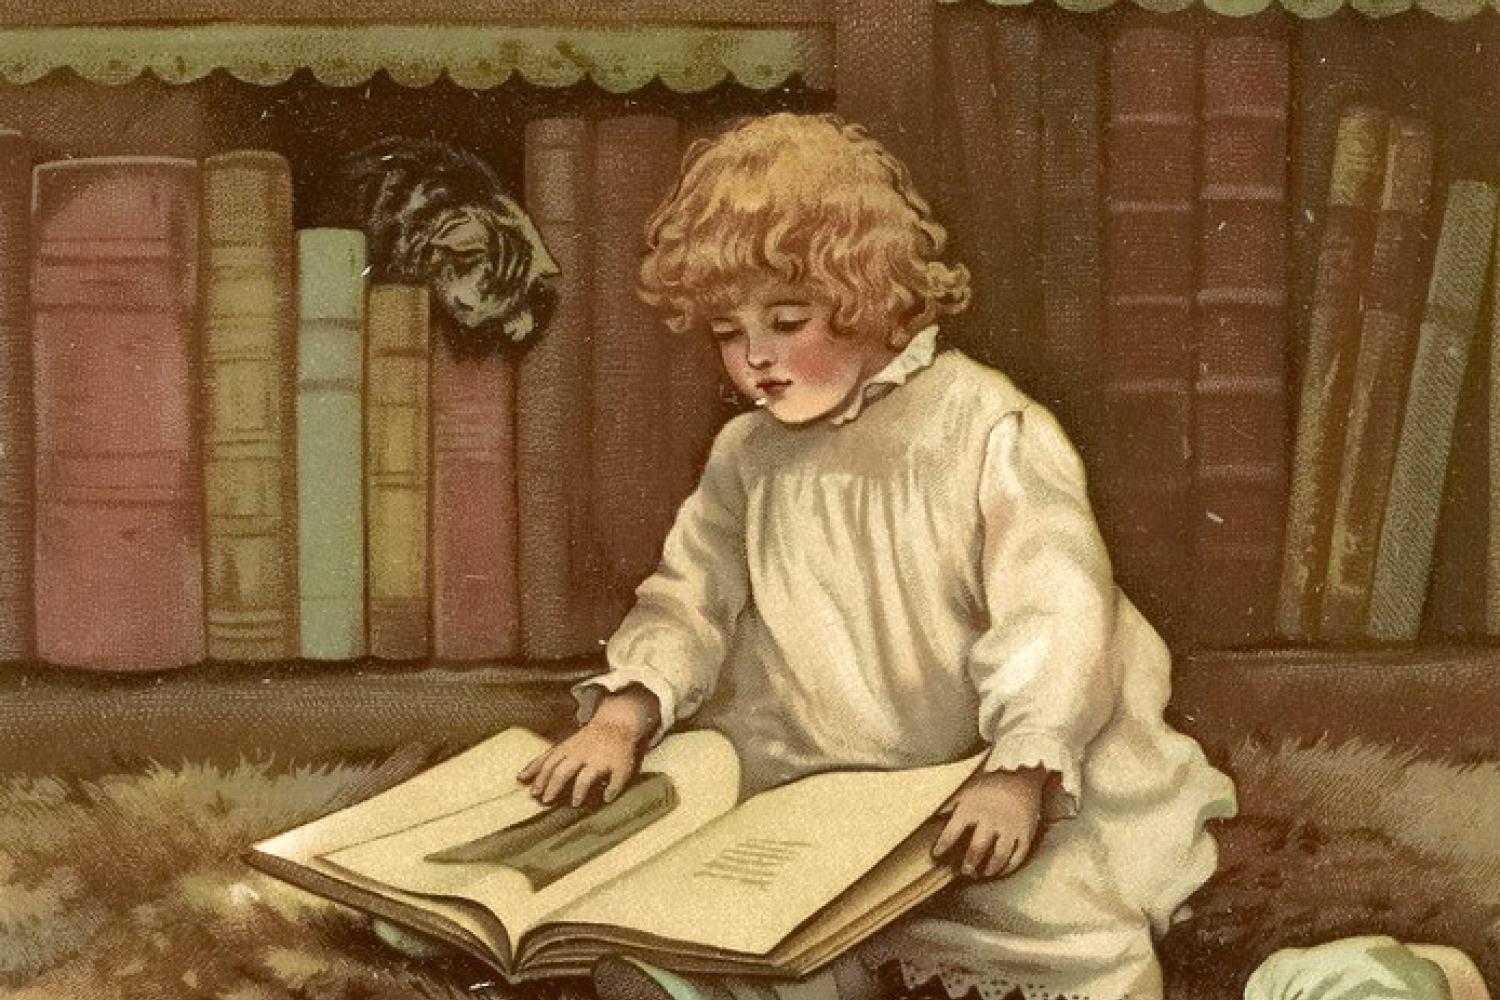 Les heures enfantines par Ernest d'Hervilly,  illustration de H. M. Bennett - 1888 - BnF